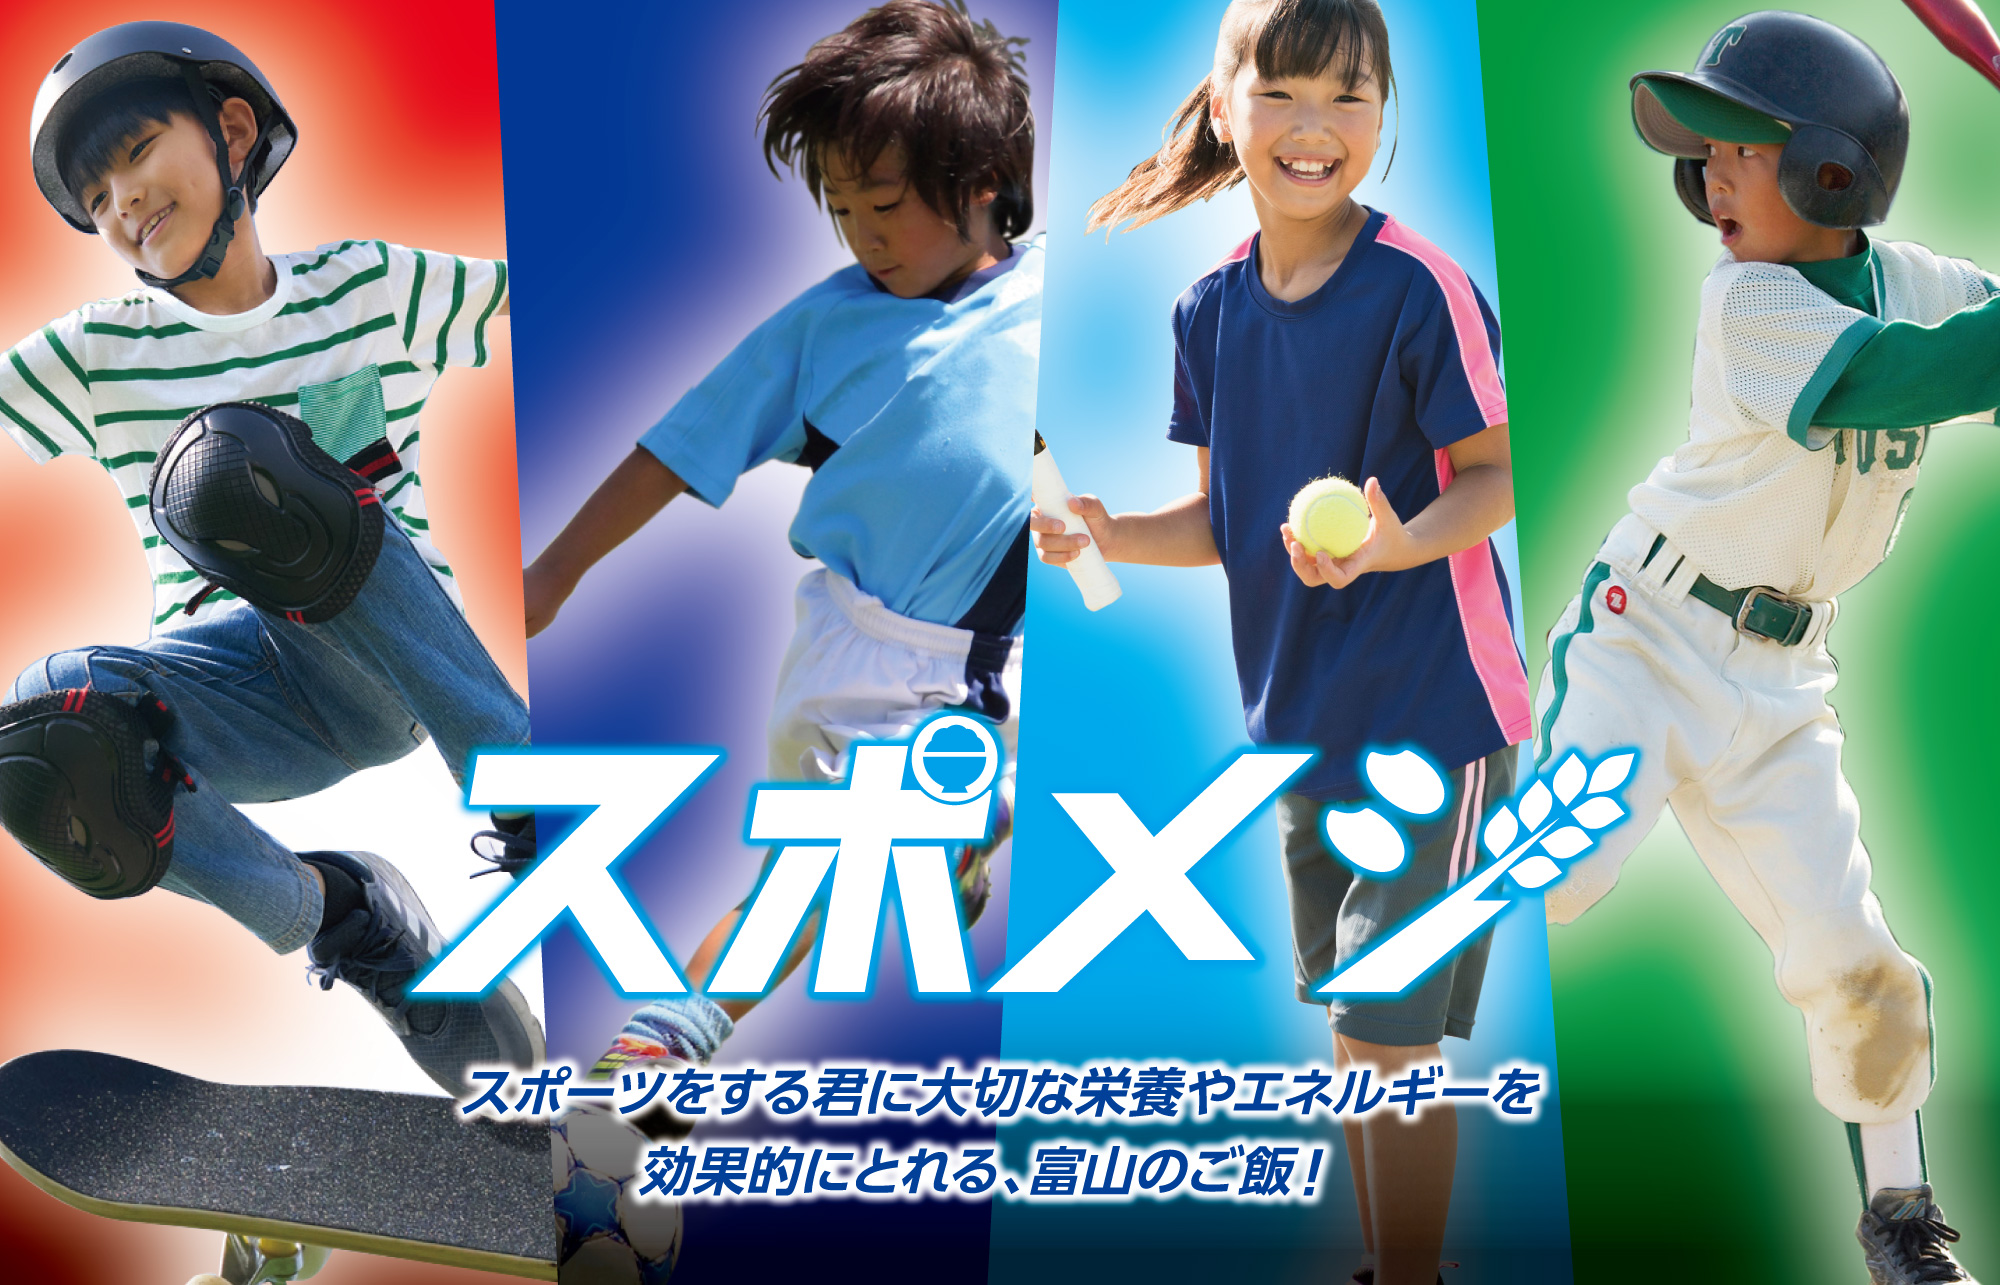 スポーツする君にとって大切なエネルギーを効果的にとれる、富山のご飯「スポメシ」!ただ今、県内プロスポーツチームの選手が自分の「スポ飯」を動画で紹介!!